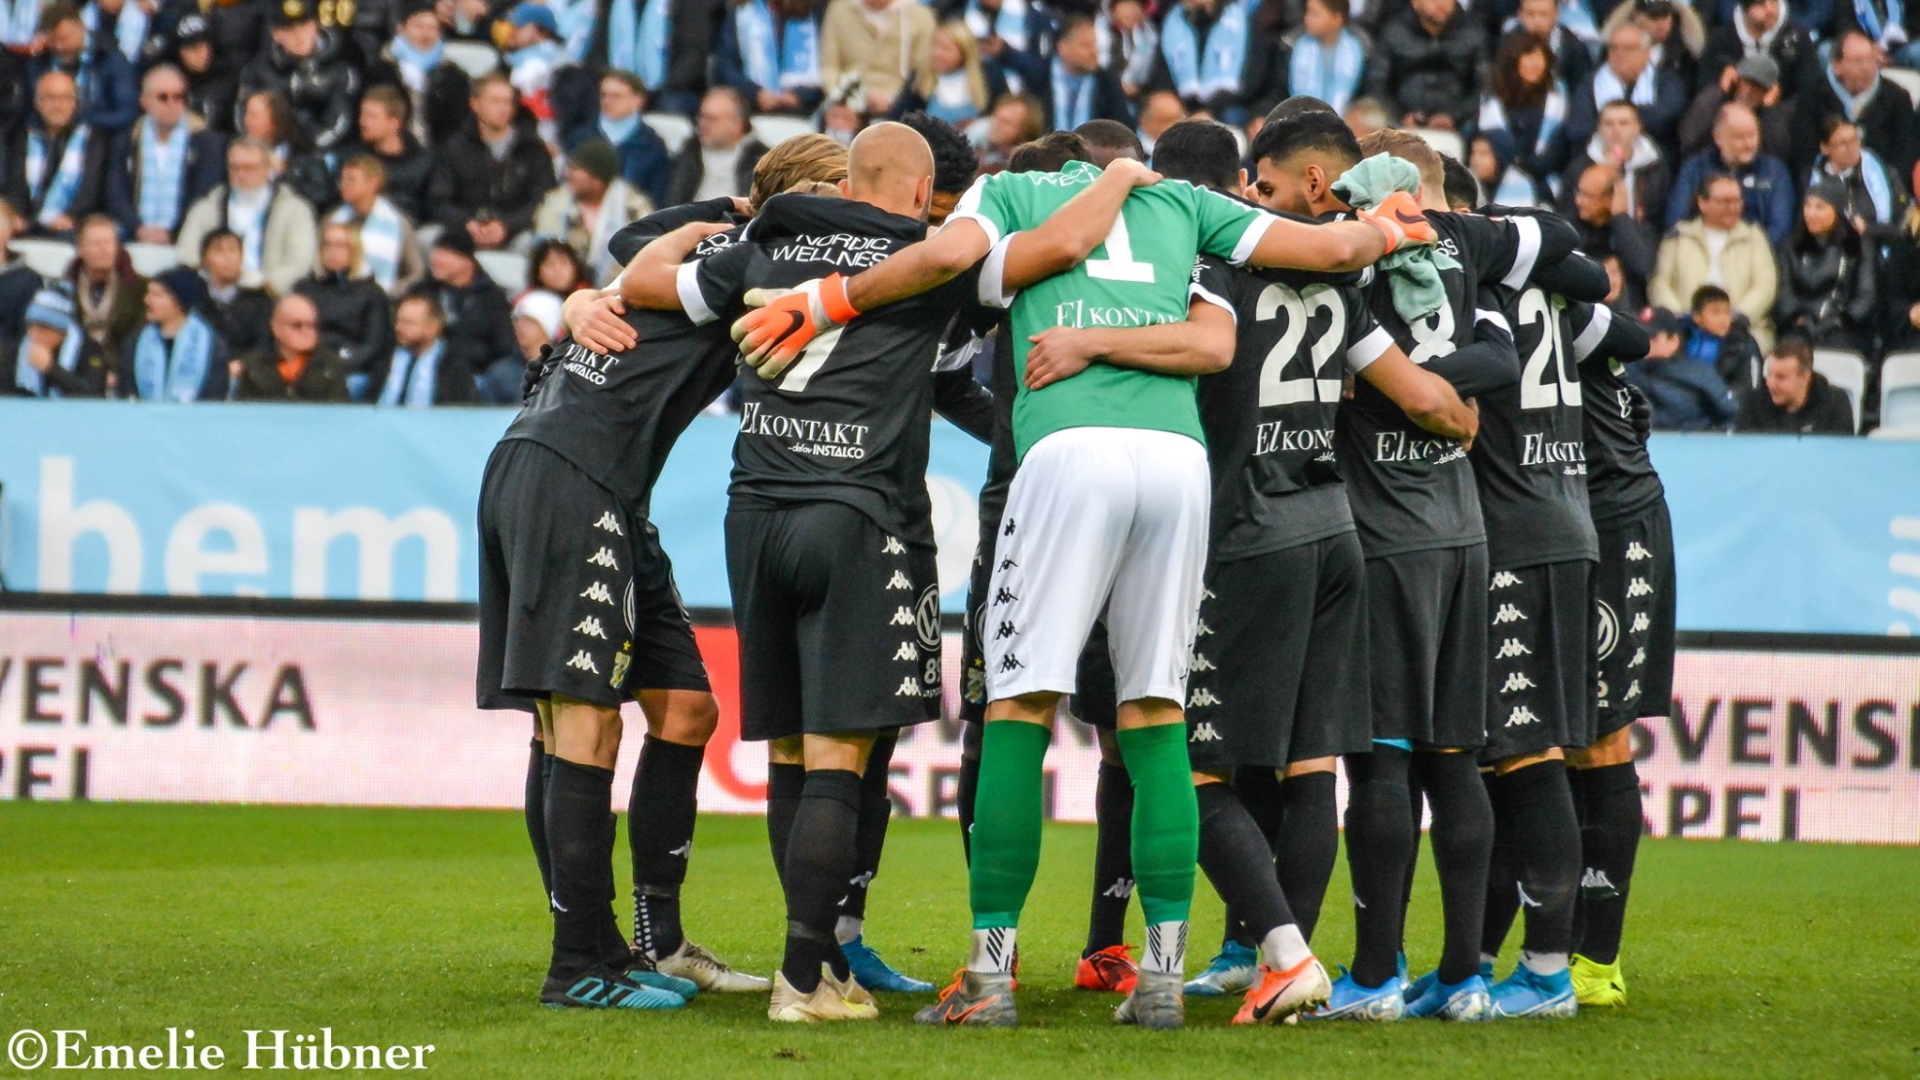 Sunday 6th of October 2019: Malmö FF – IFK Göteborg 1–0